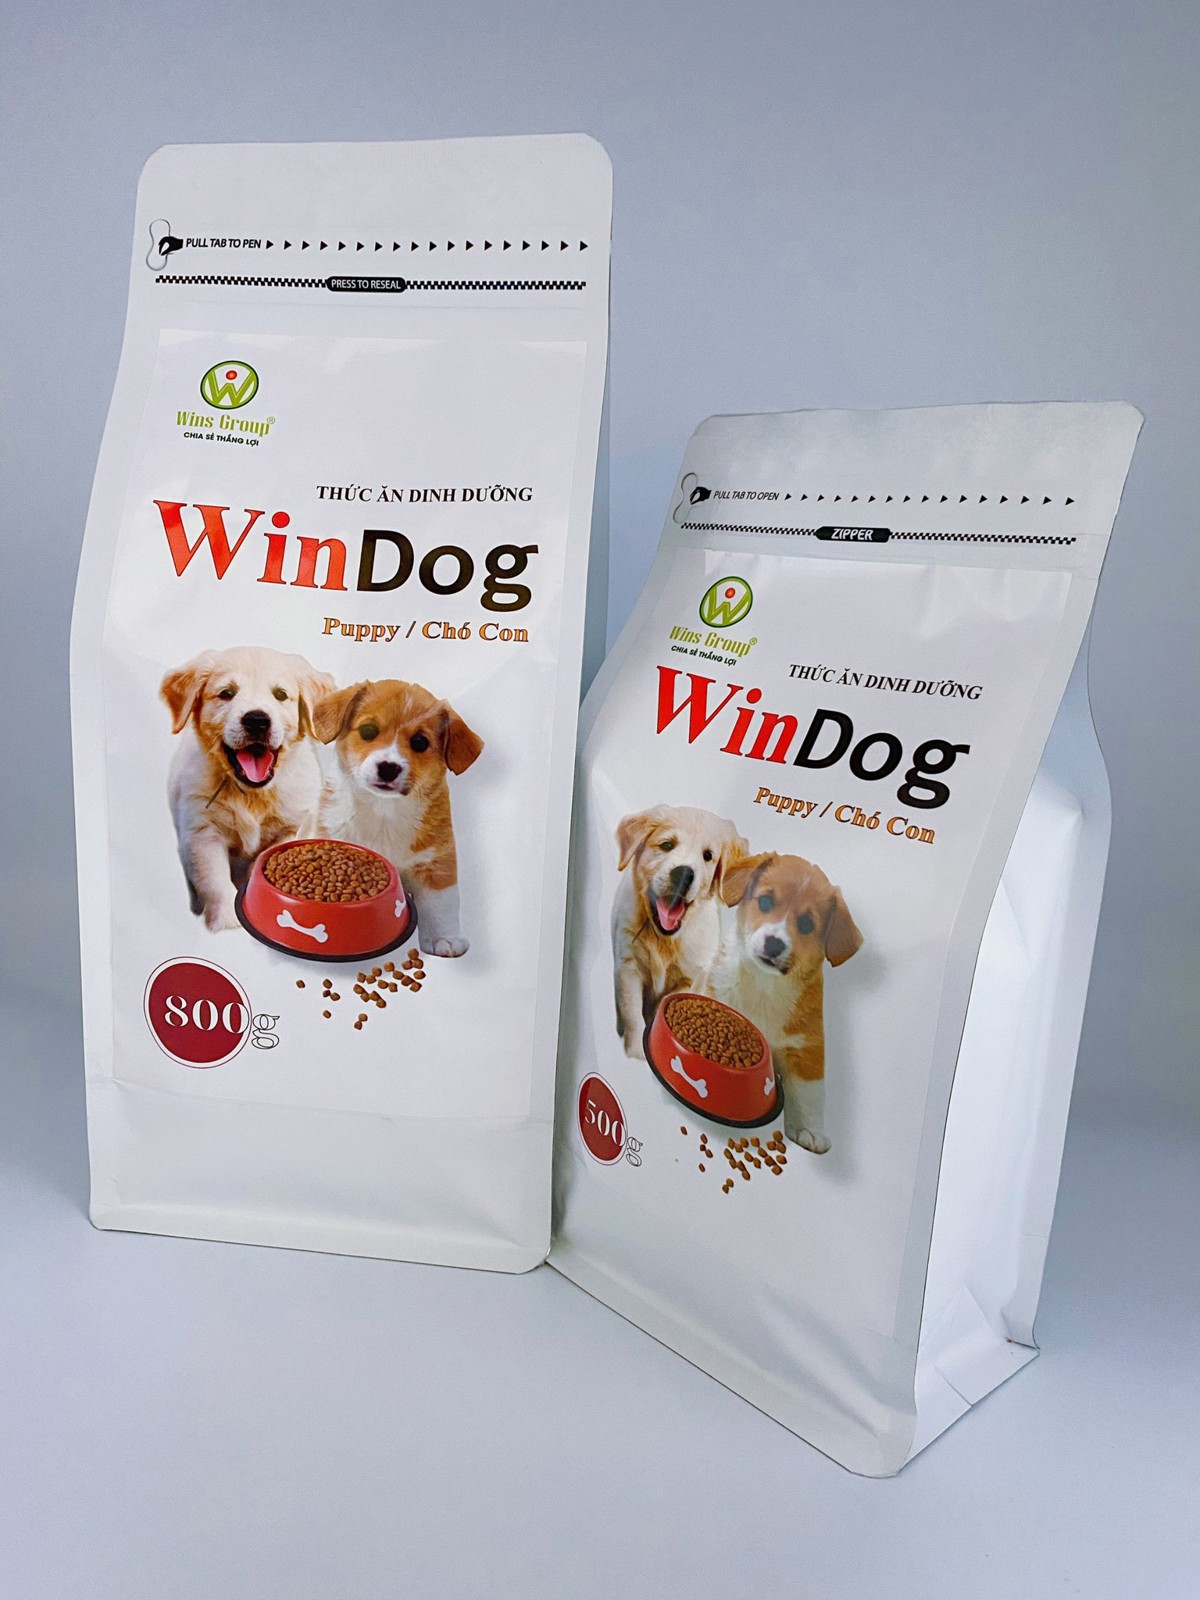 Ảnh sản phẩm Windog puppy - thức ăn dành cho chó con